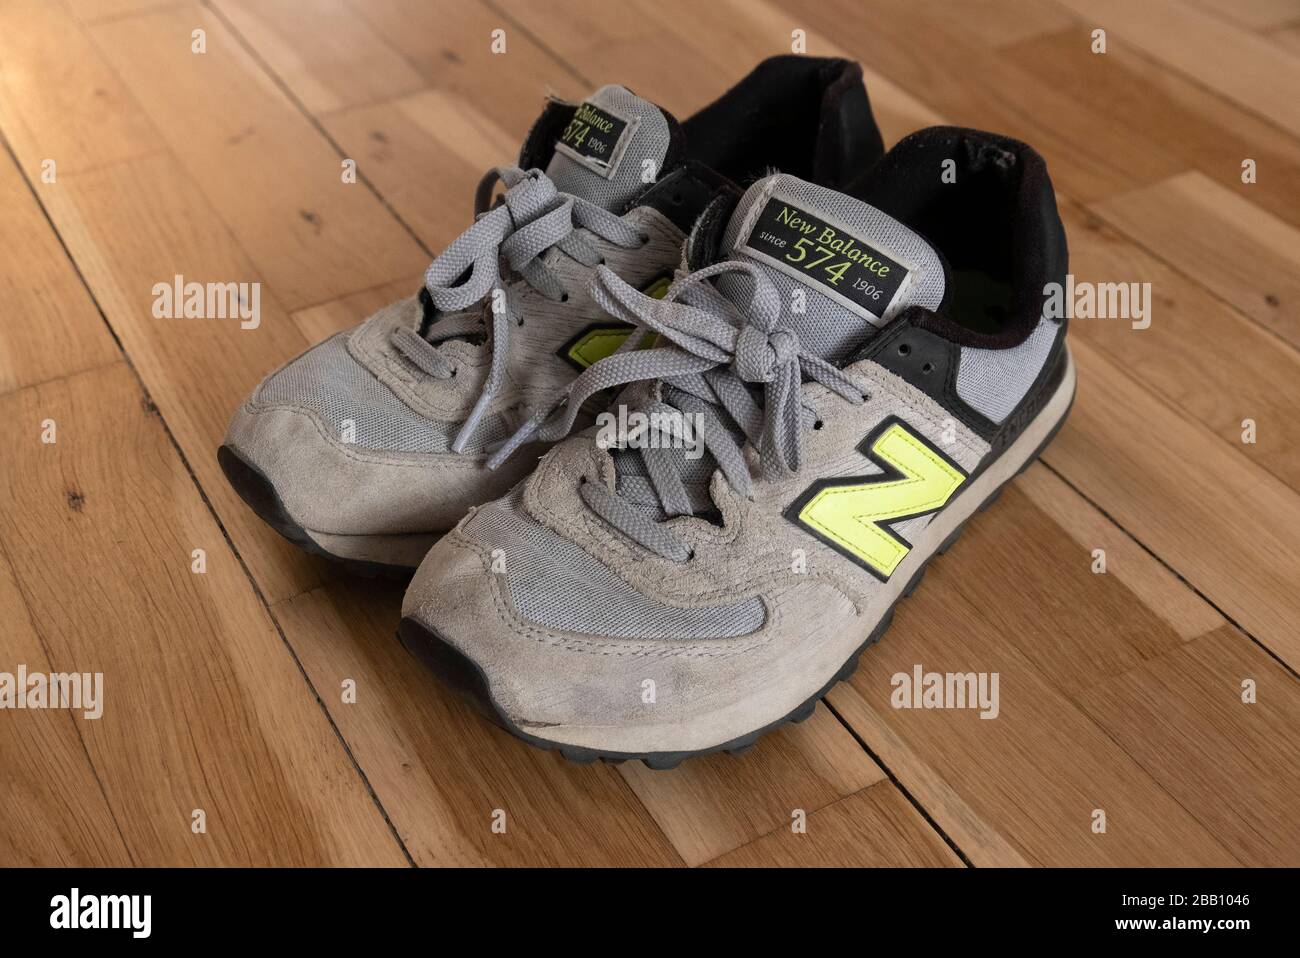 Vecchio paio di nuovo equilibrio 574 scarpe da training su pavimento in legno duro Foto Stock